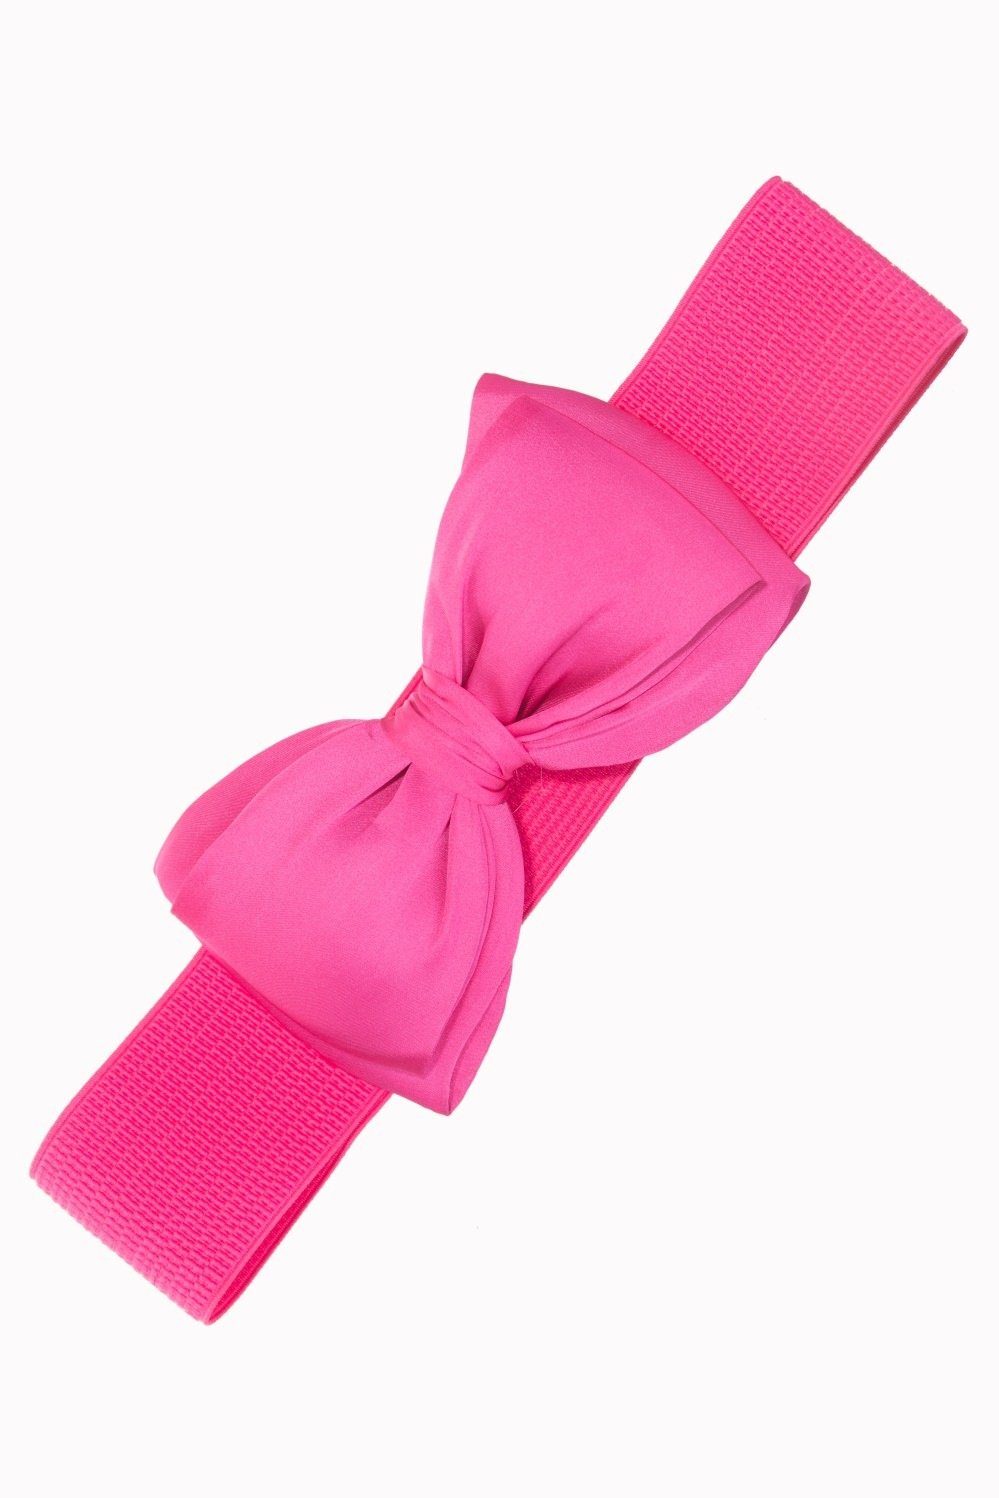 Banned Taillengürtel Bella Belt Pink Vintage Schleife Retro Stretchgürtel